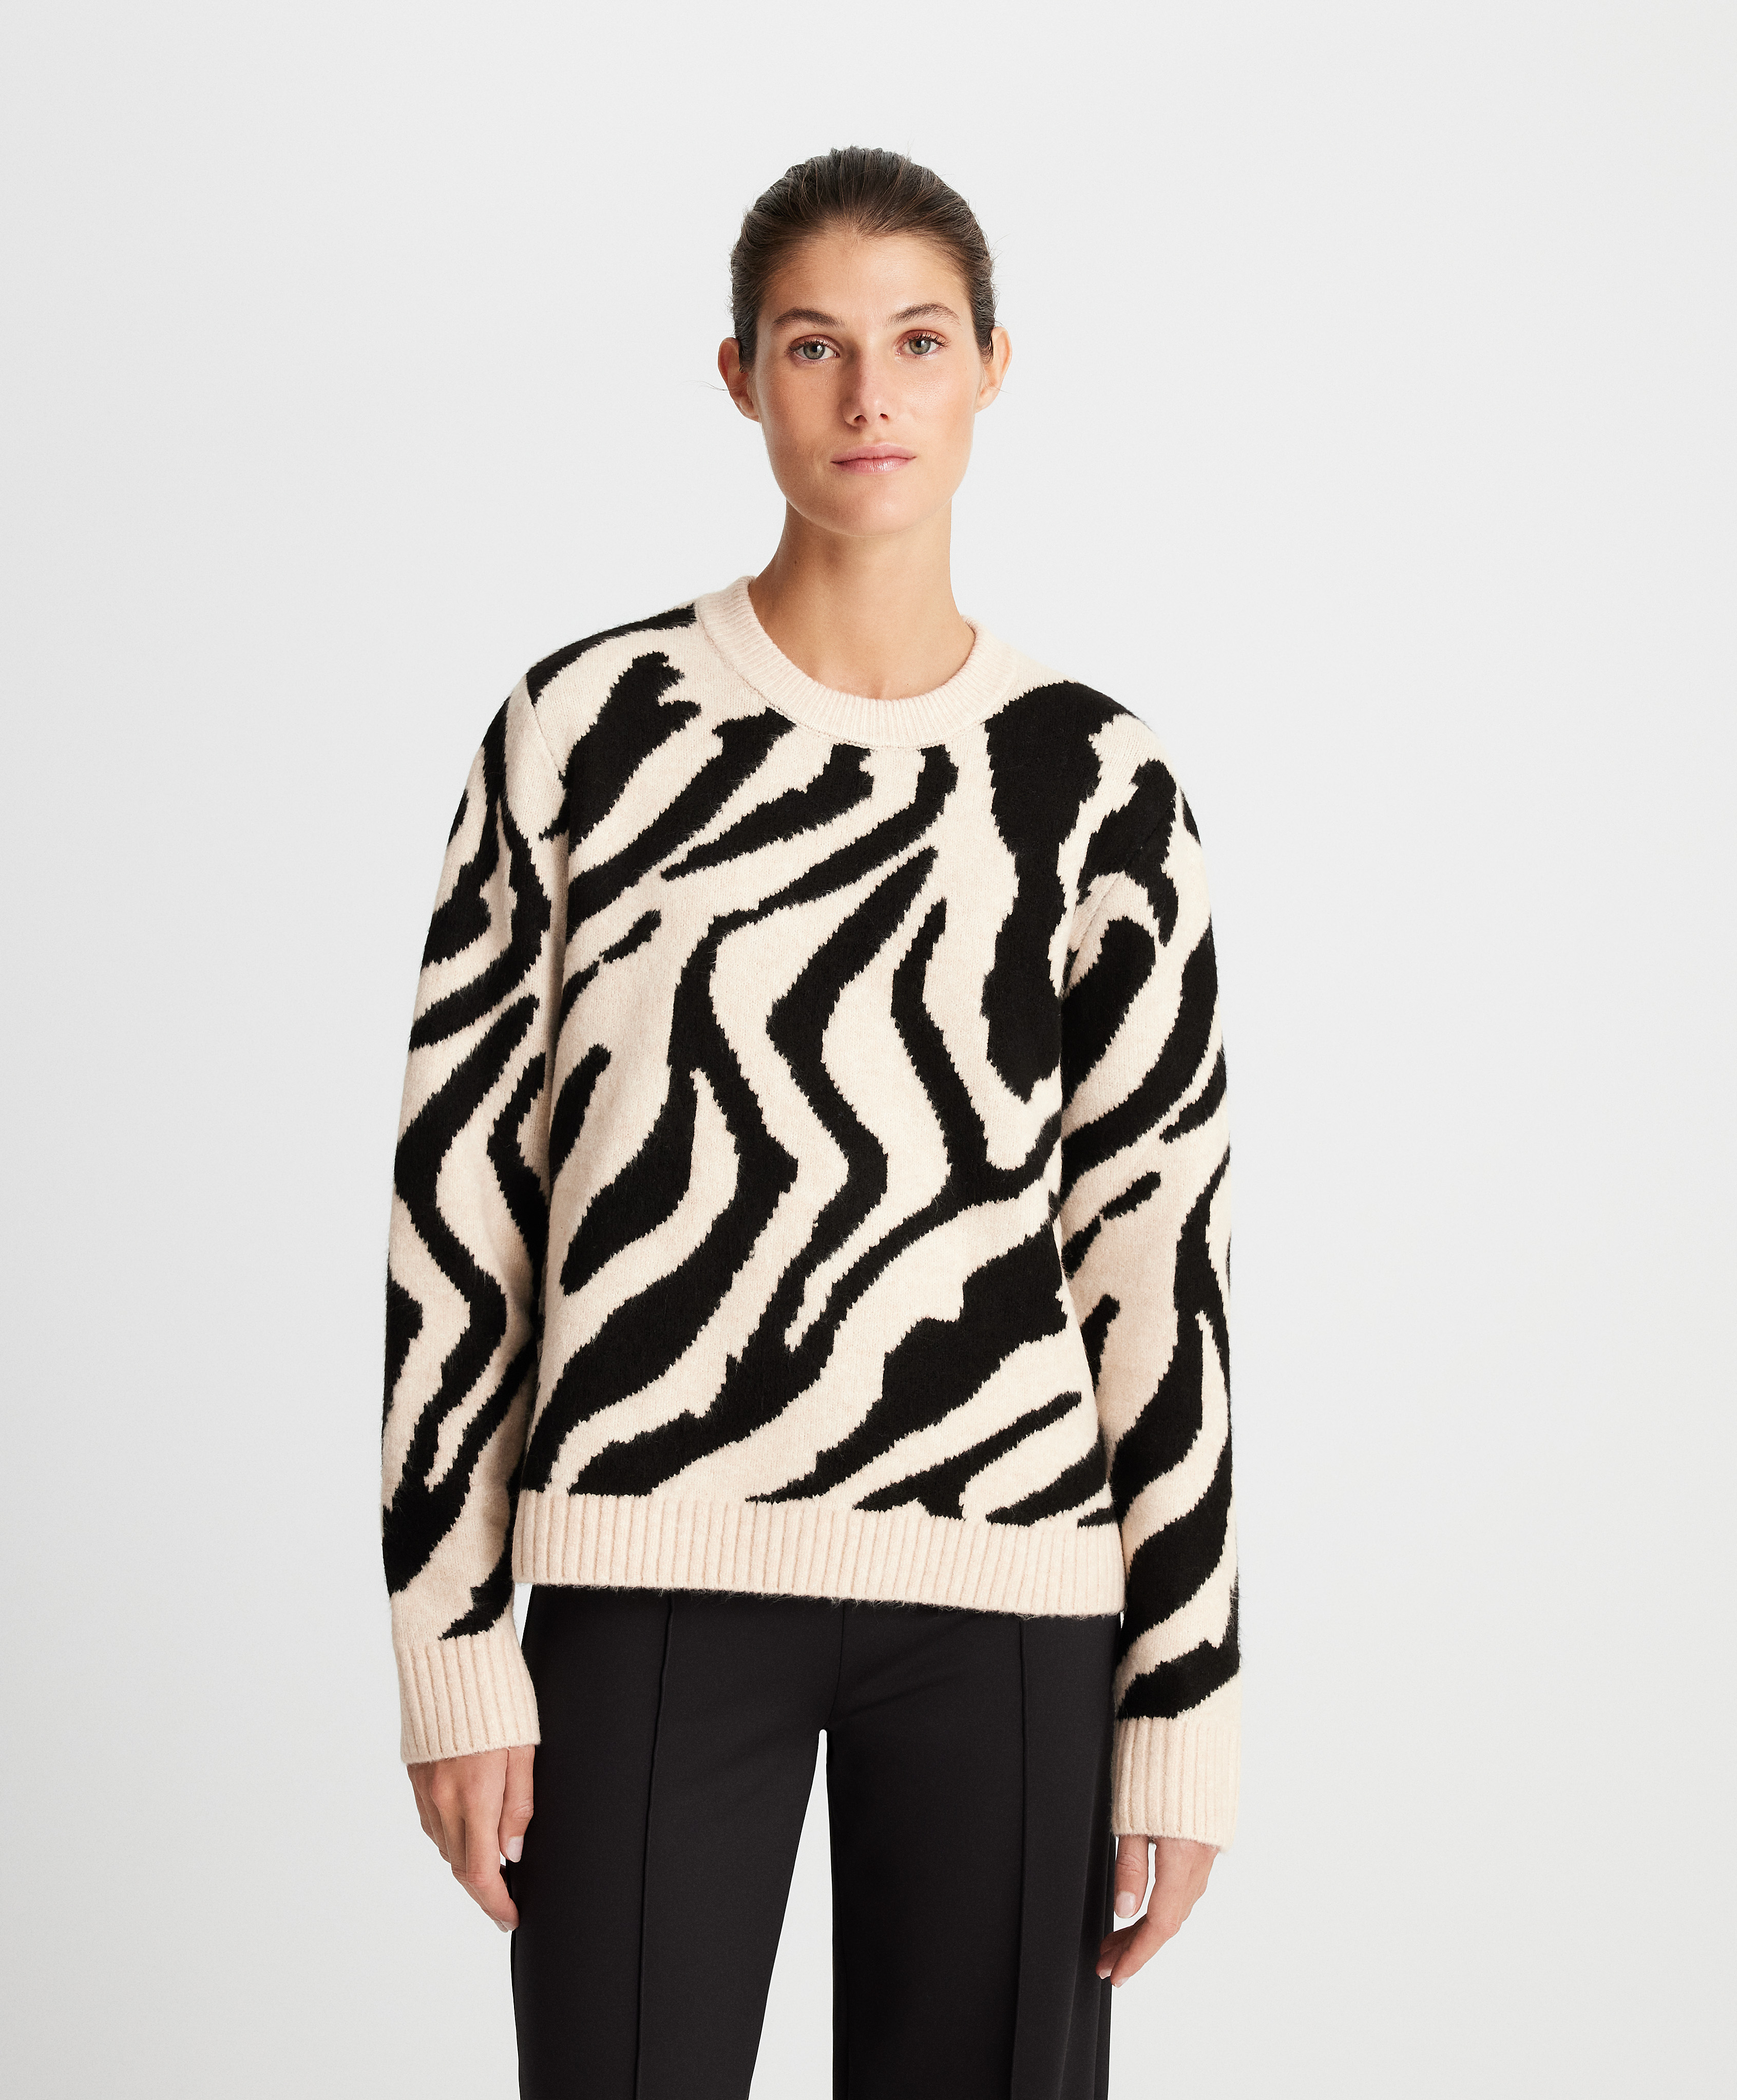 Camisola de malha jacquard padrão de zebra